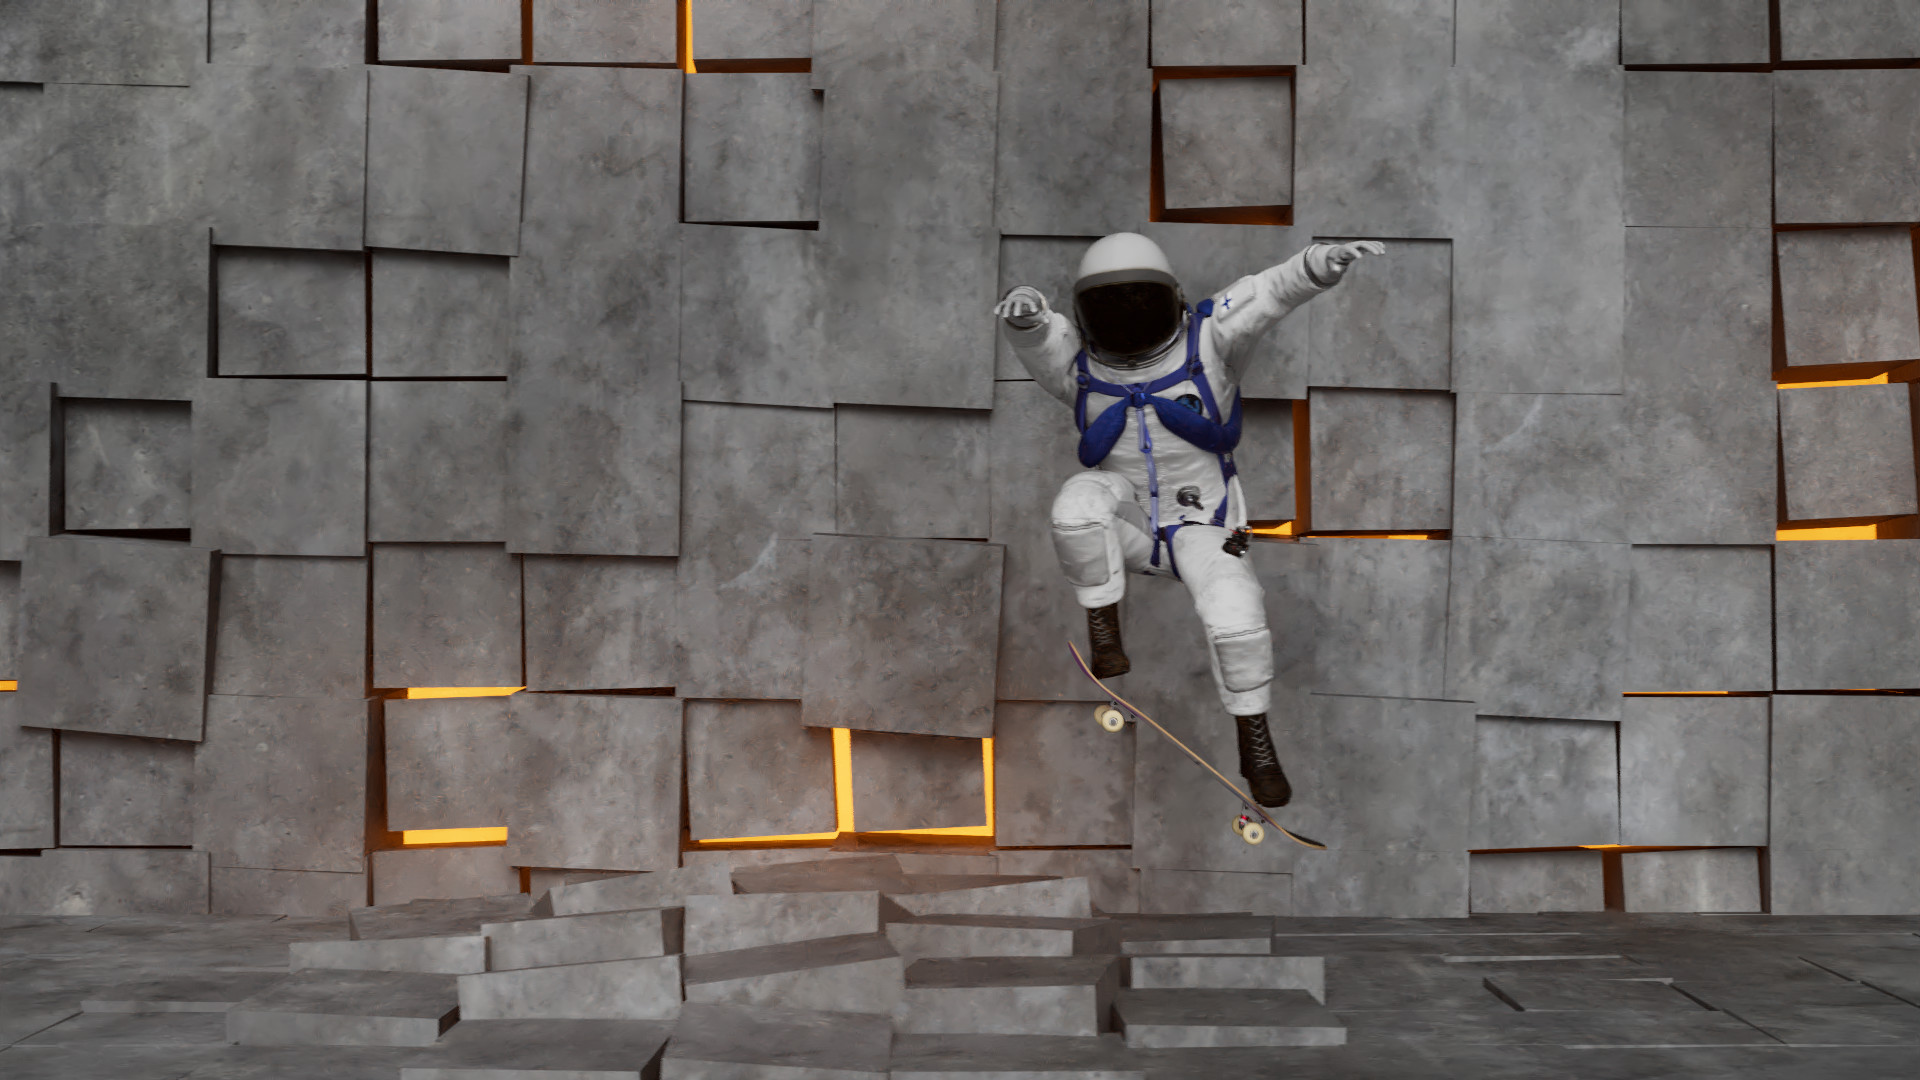 goofy-foot astronaut jump scene